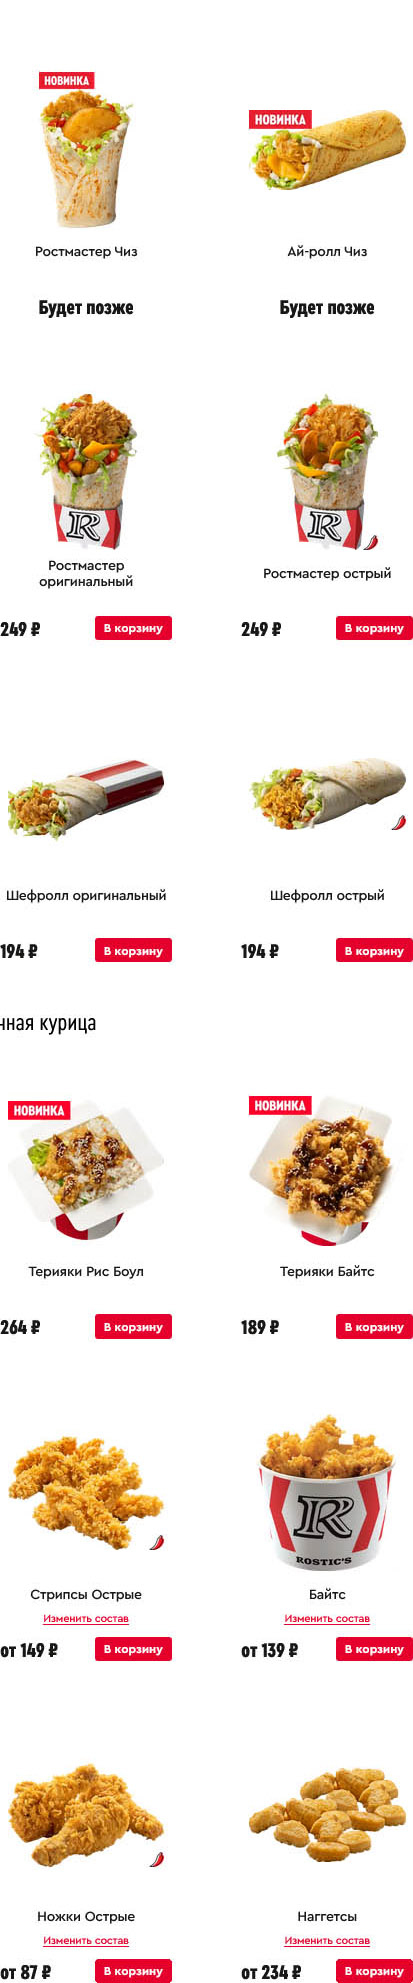 Иркутск KFC меню официальный сайт